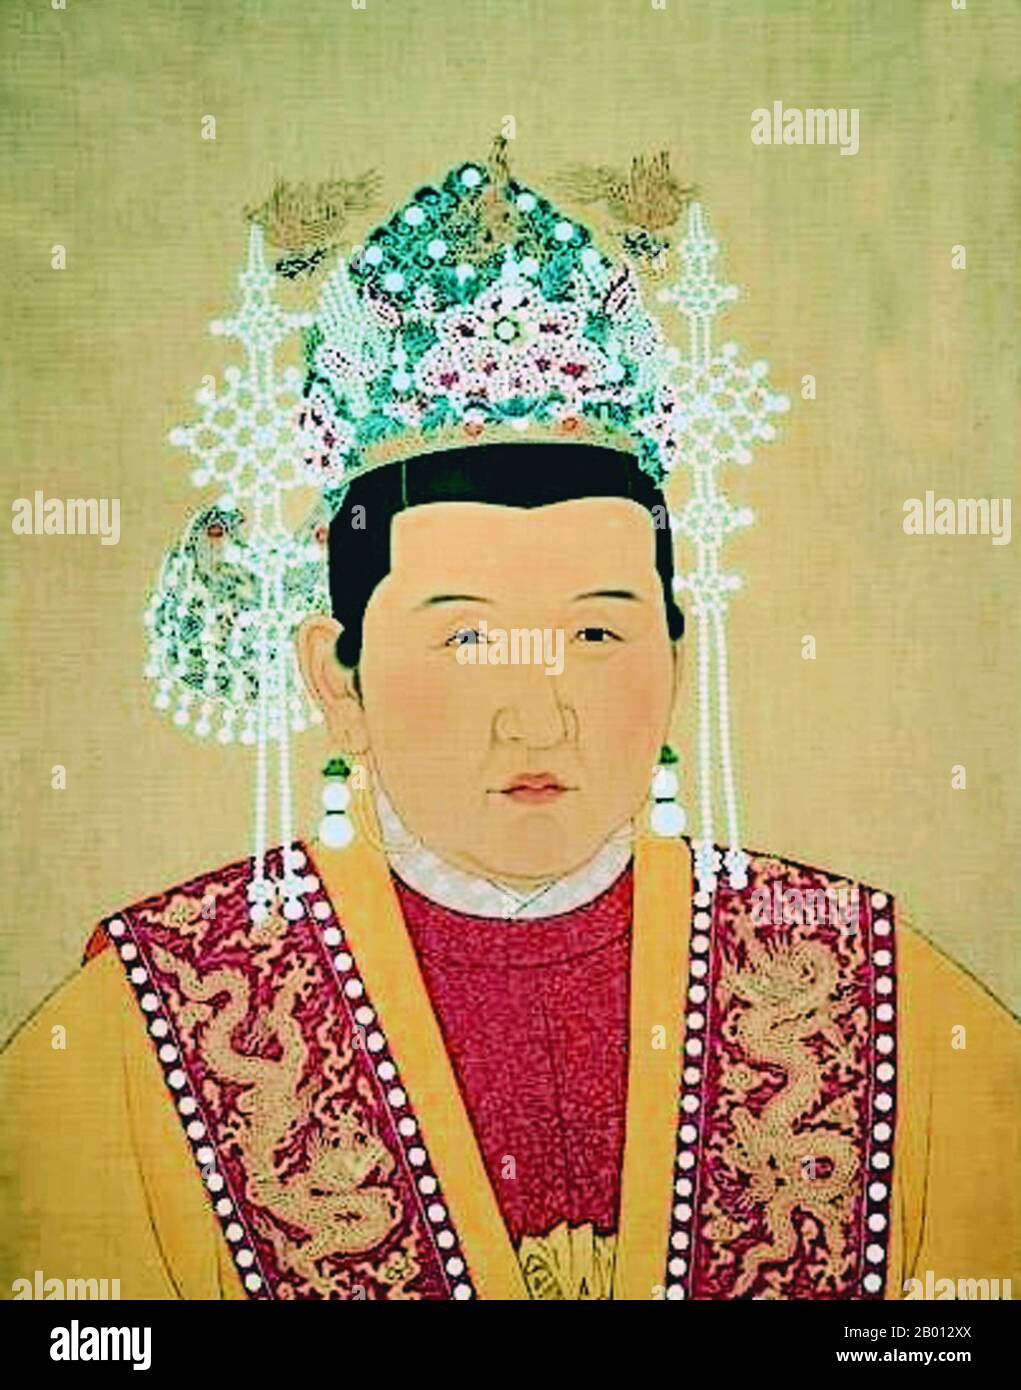 China: Kaiserin Xiao CI Gao (1332-1382), Gemahlin des 1. Ming-Imperators, c. 14.-17. Jahrhundert. Kaiserin Xiaocigao (1332-1382), auch bekannt als Kaiserin Ma, war die Gemahlin des 1. Ming-Imperators Hongwu (r. 1368-1398) und Mutter des 3. Ming-Imperators Yongle (r. 1402-1424). Aus ärmlichen Verhältnissen heiratete sie den zukünftigen Kaiser, als er nur noch Offizier der Roten Turban-Armee war und begleitete ihn bei Feldzügen und bei der Verwaltung seiner Angelegenheiten. Als ihr Mann Kaiser wurde, fungierte Xiaocigao als Hongwus politischer Berater und Sekretär und hatte während seiner Regierungszeit einen großen Einfluss. Stockfoto